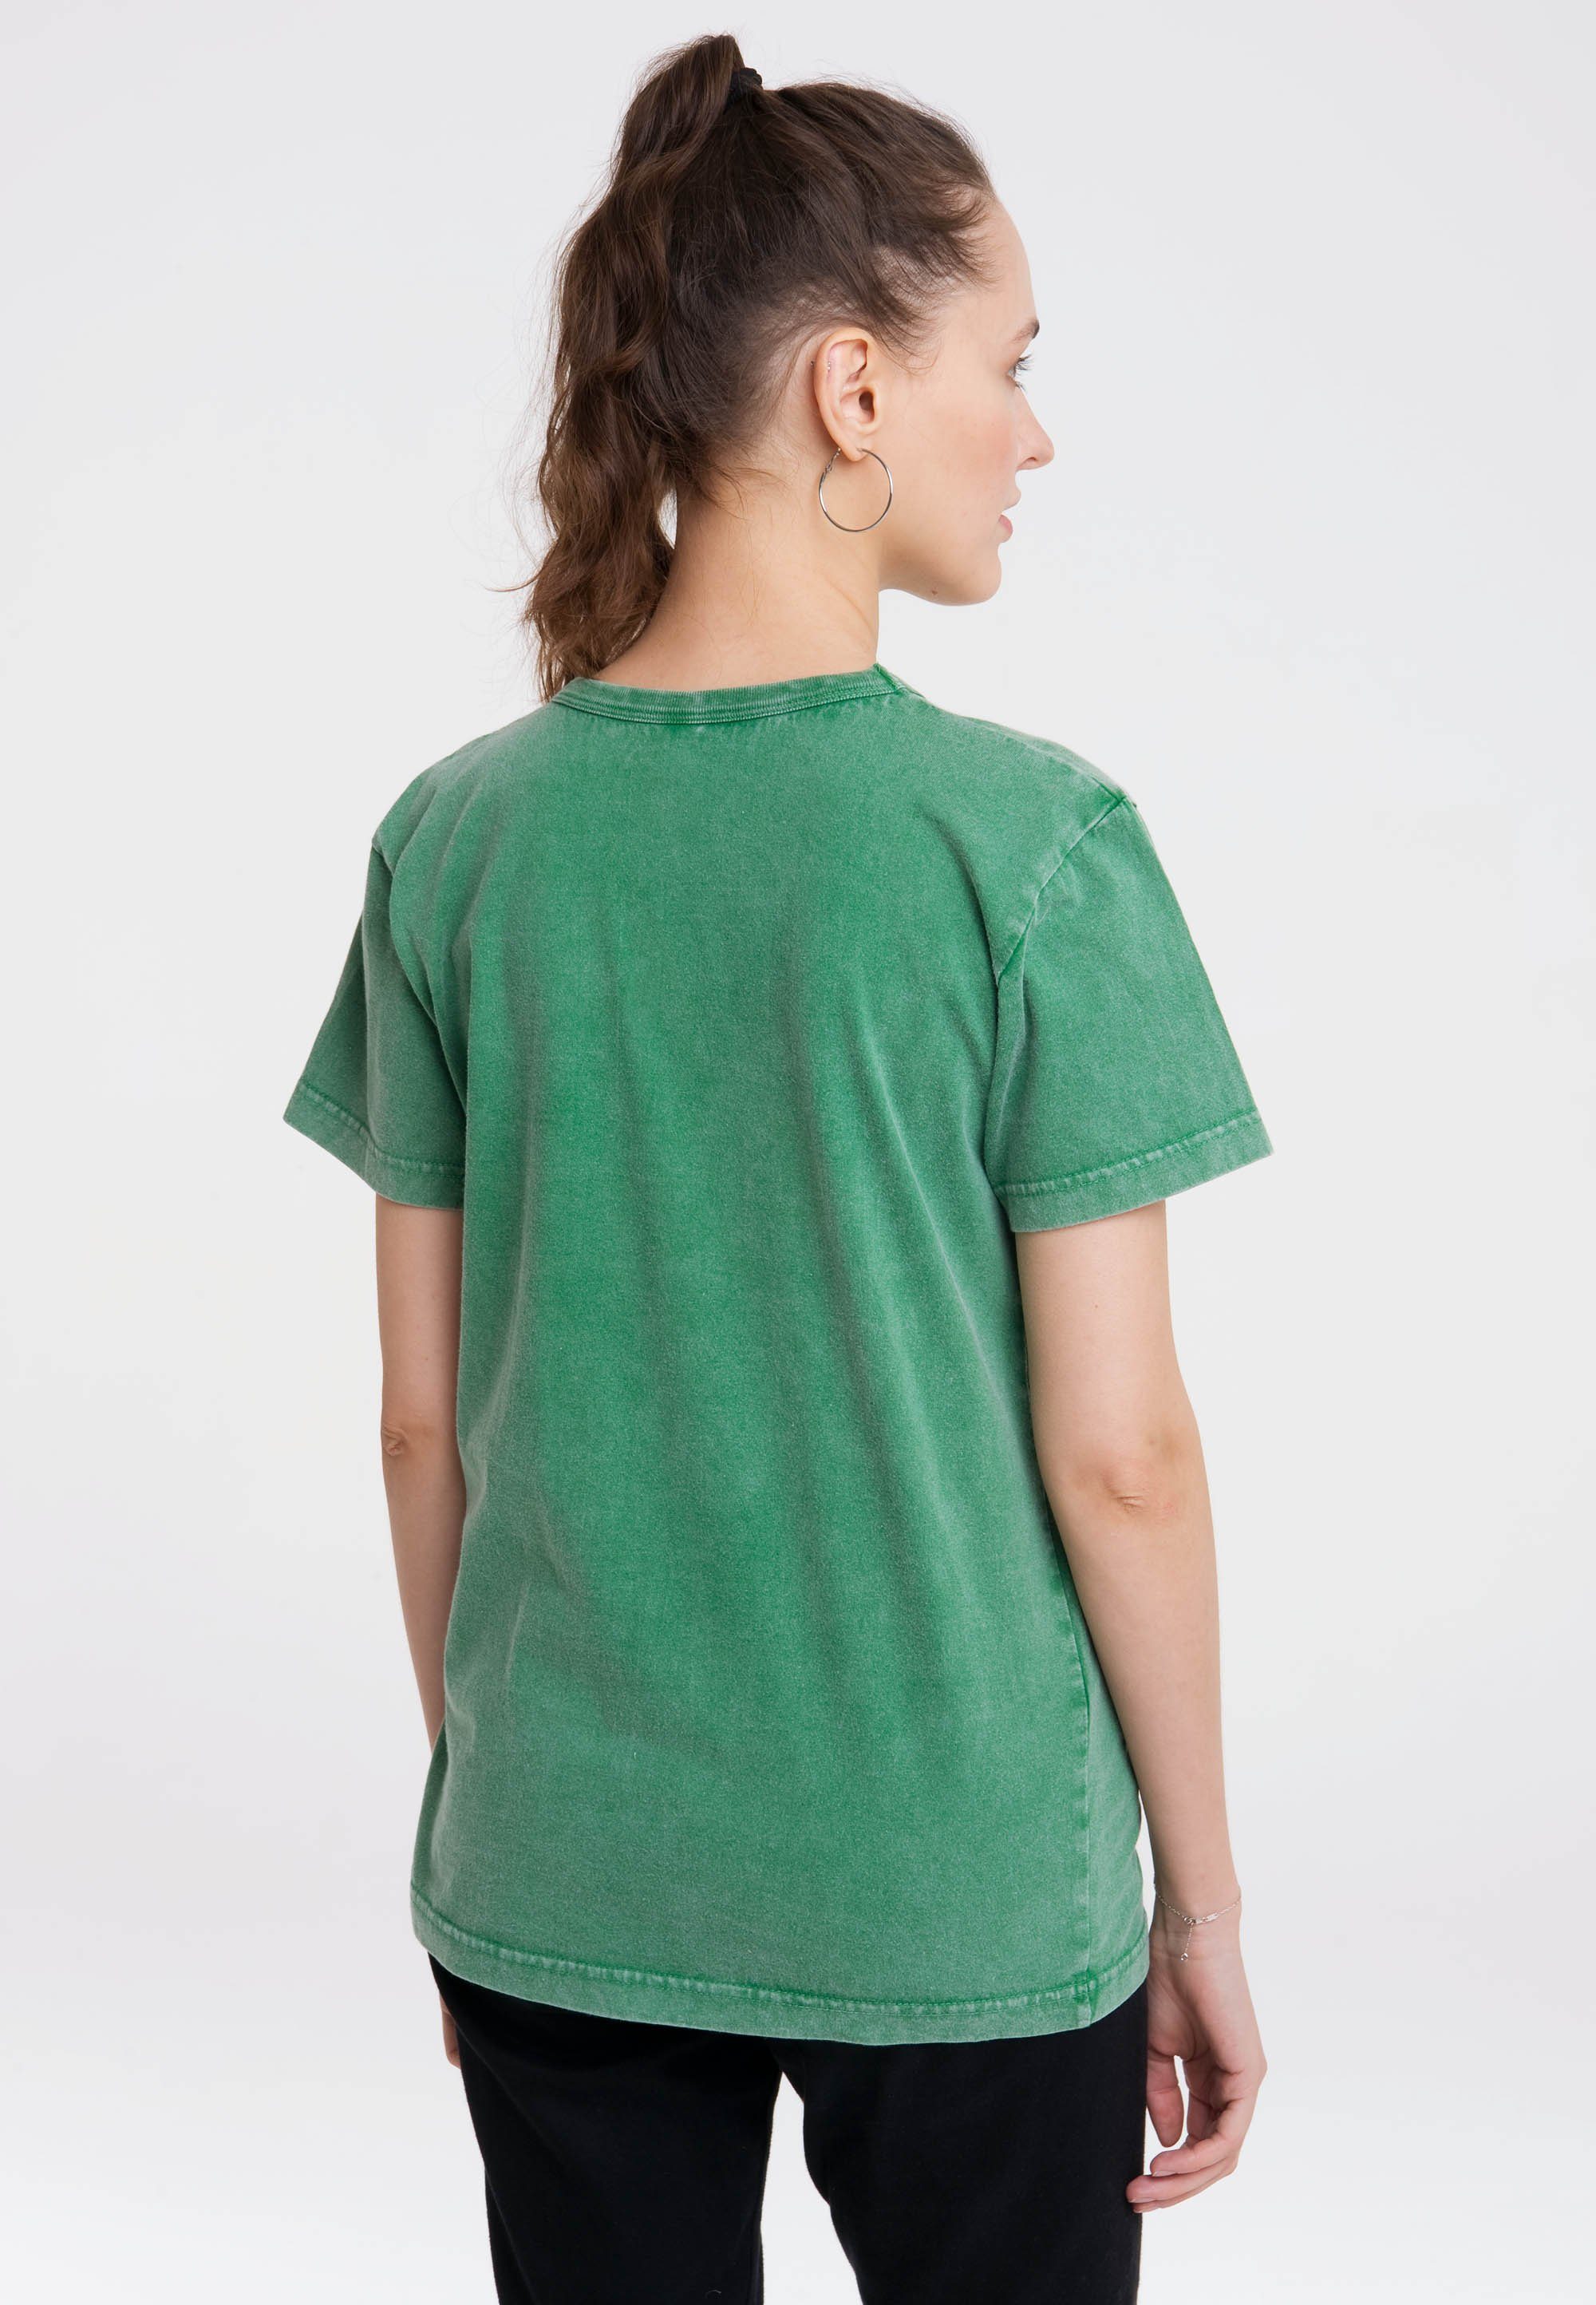 kleine Print lizenziertem LOGOSHIRT mit Maulwurf grün T-Shirt Der